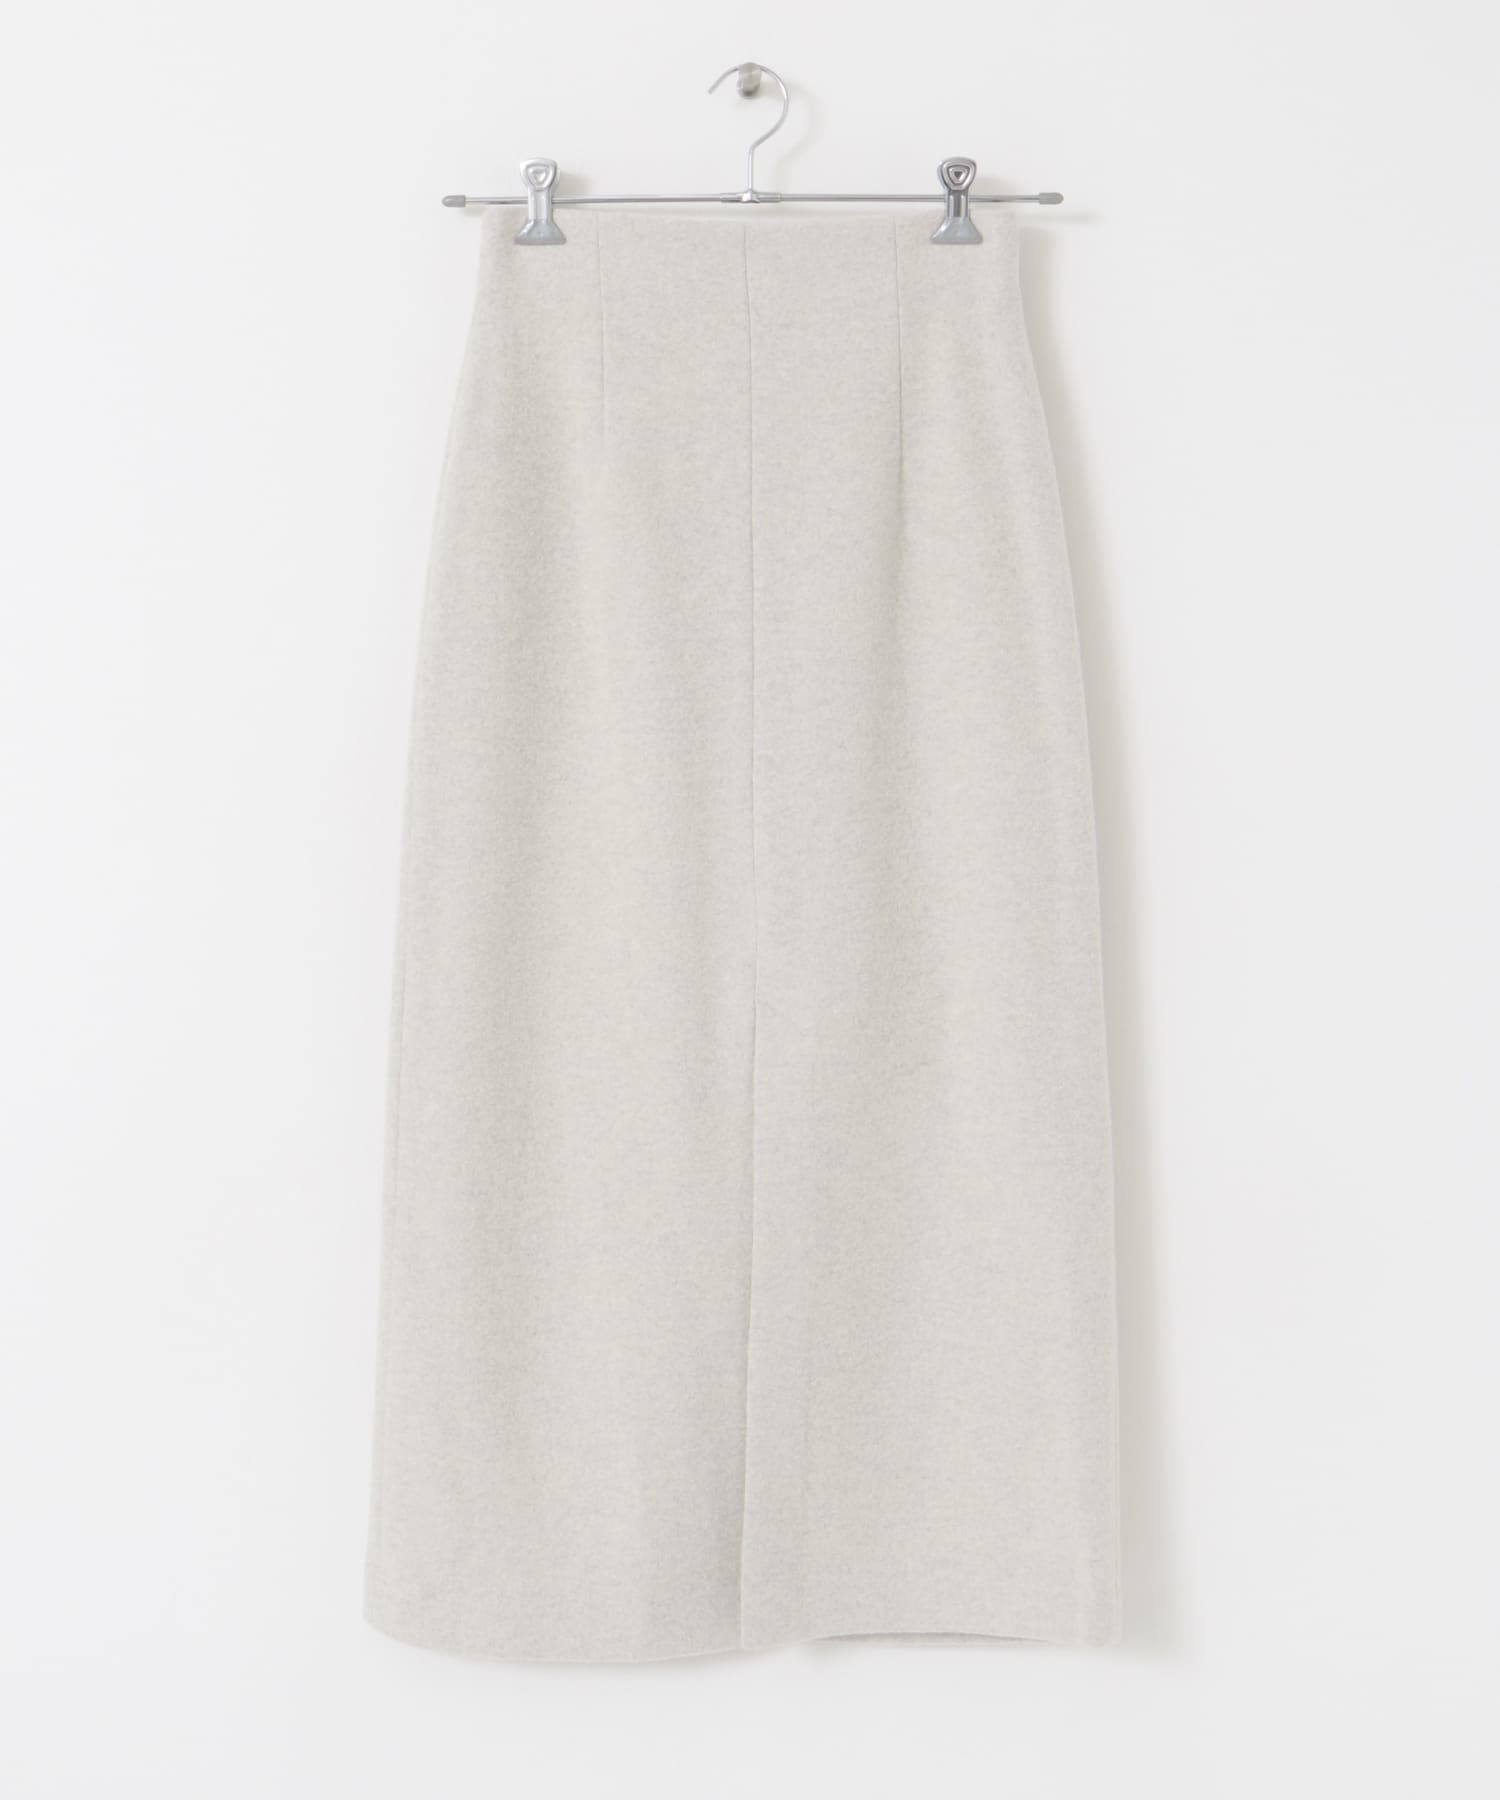 日本製羊毛開衩窄裙(米色-38-OFF WHITE)